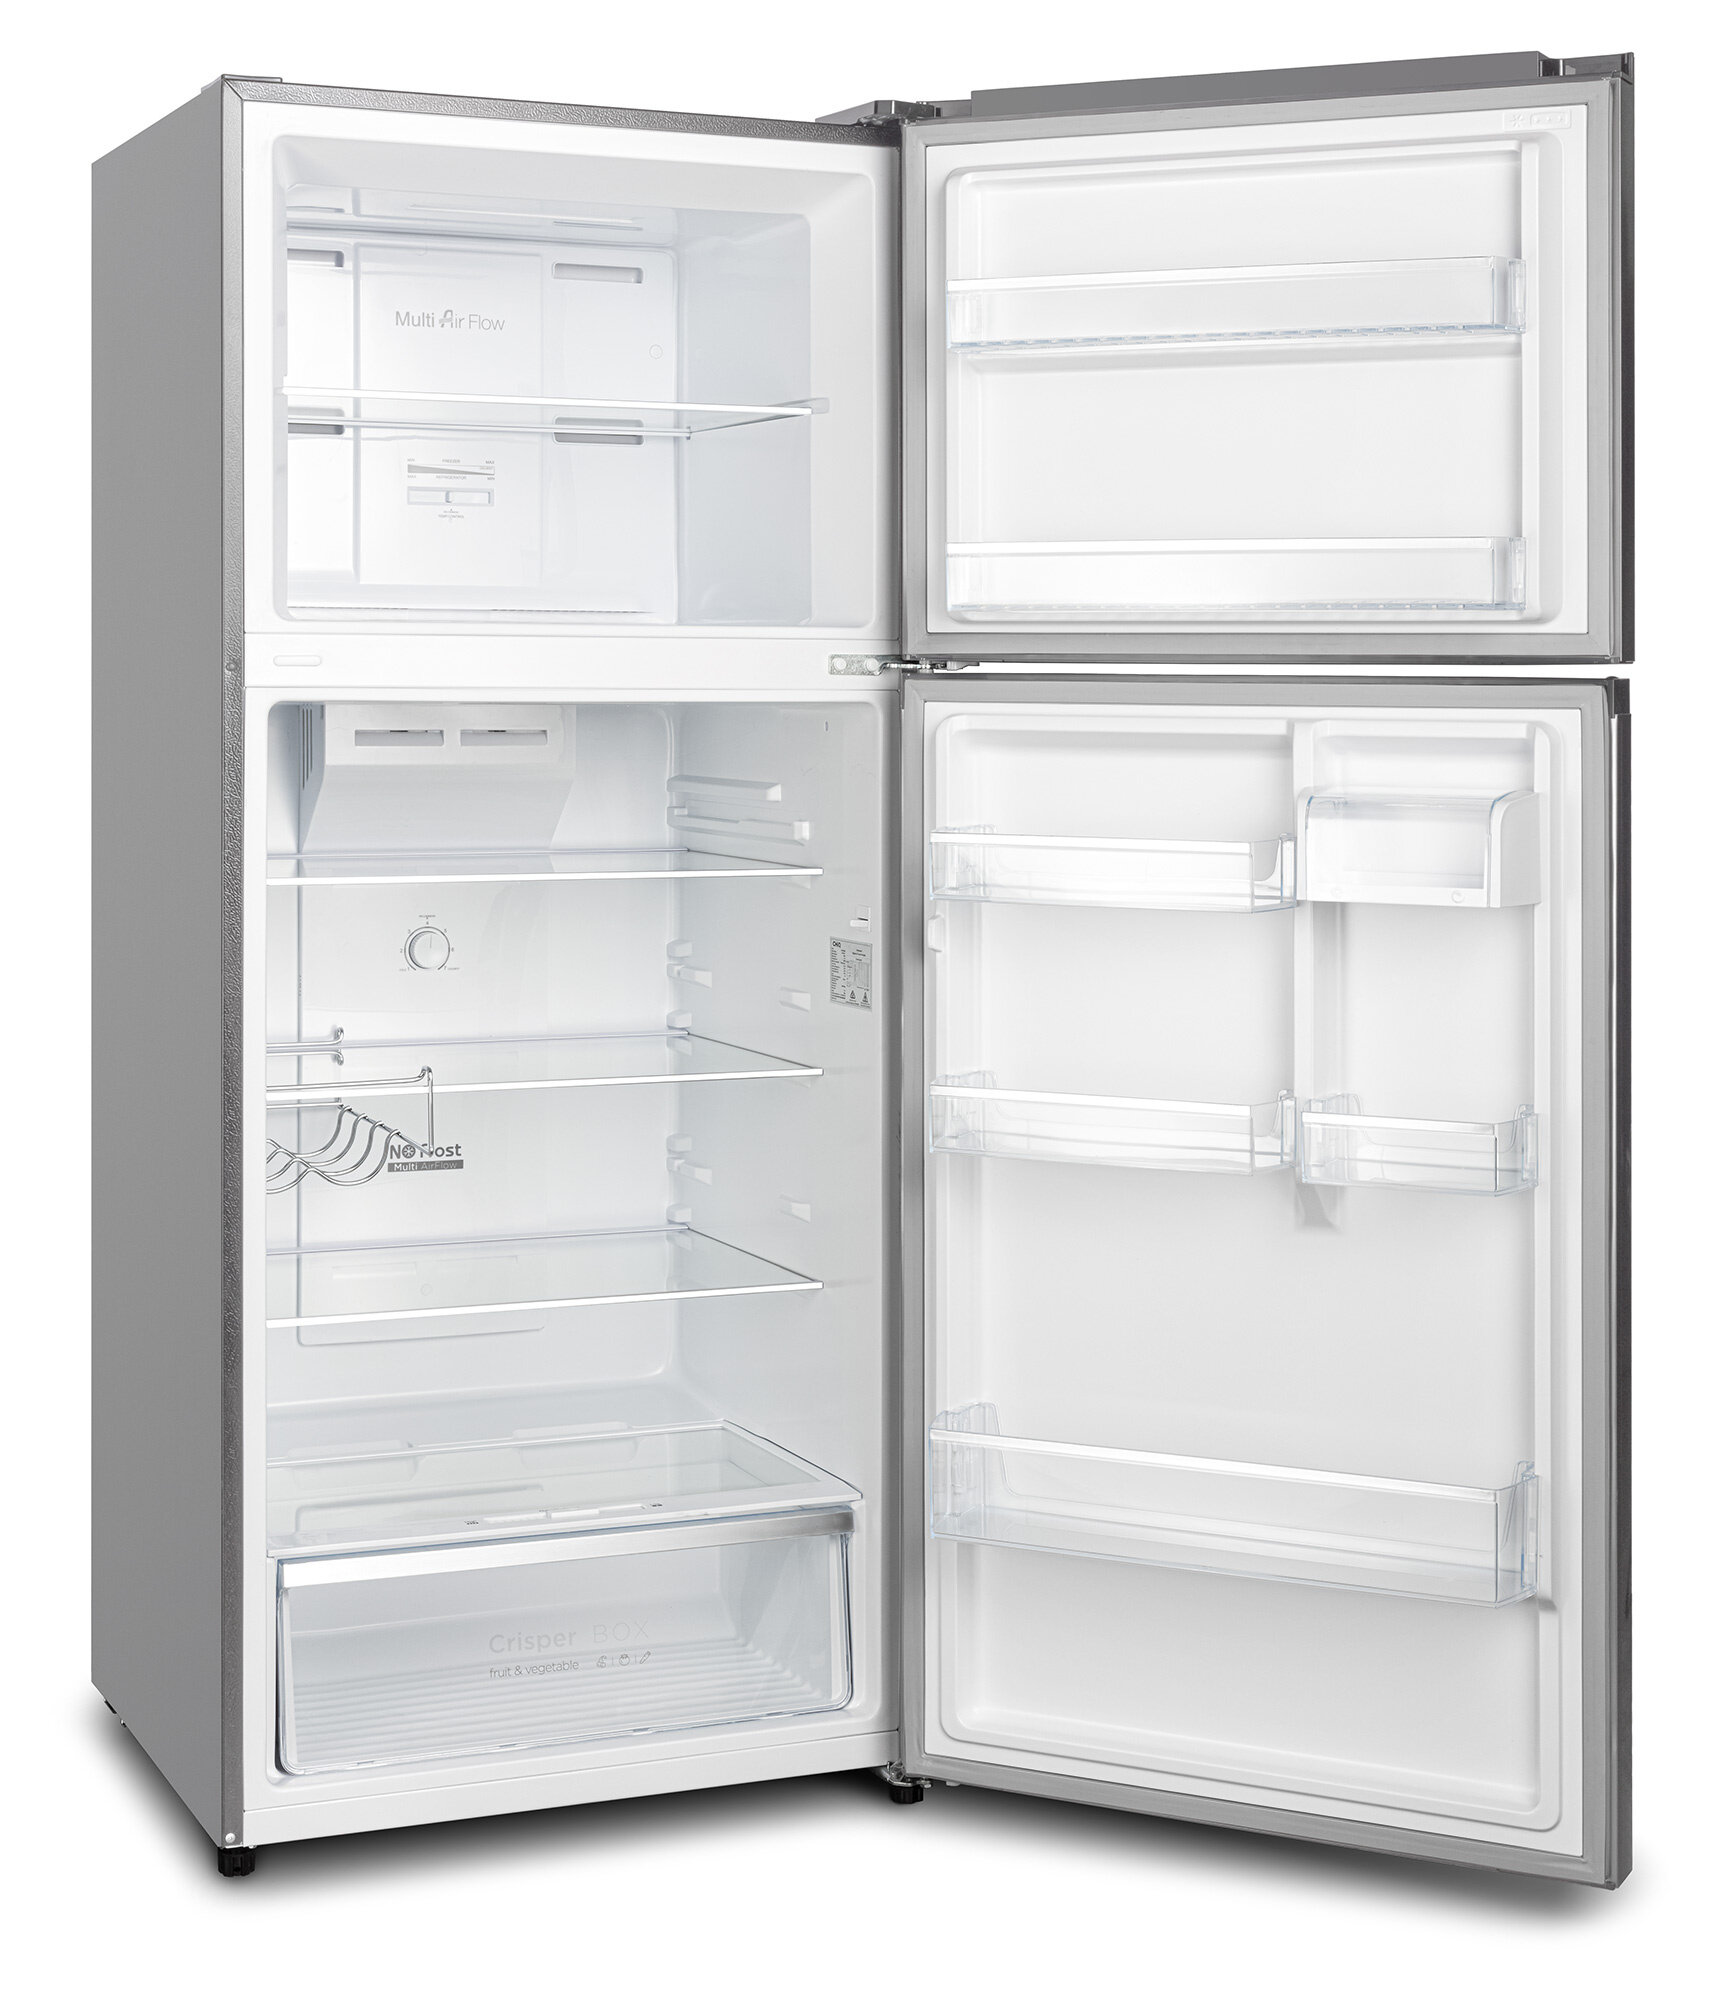 Холодильник Hyundai CT5045FIX нержавеющая сталь (двухкамерный)